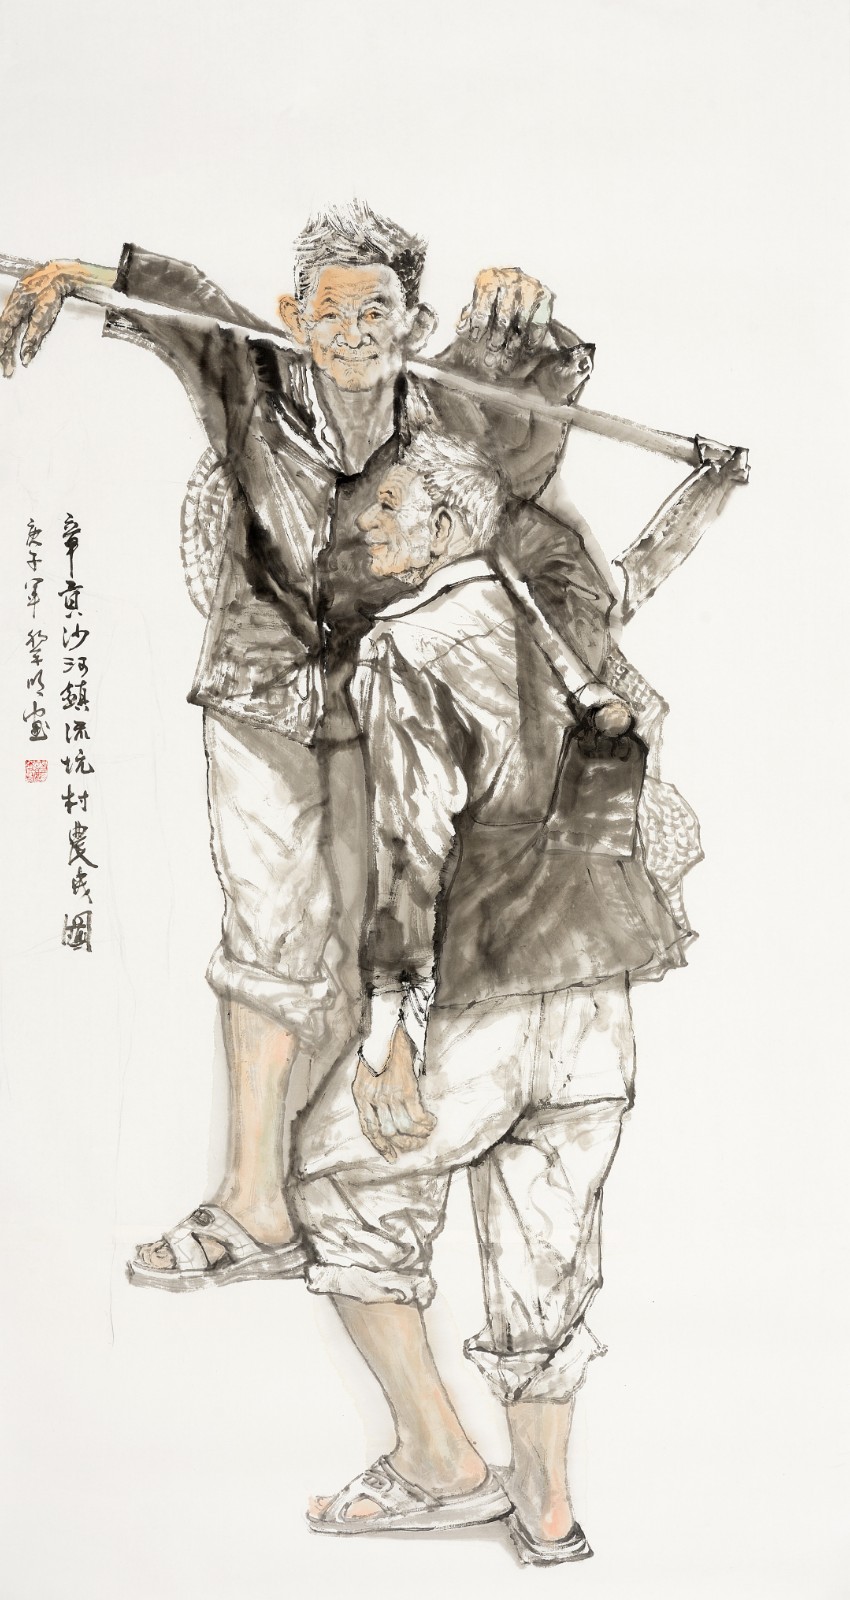 黎明《章贡沙河镇流坑村民图》 中国画180cmX96cm.jpg